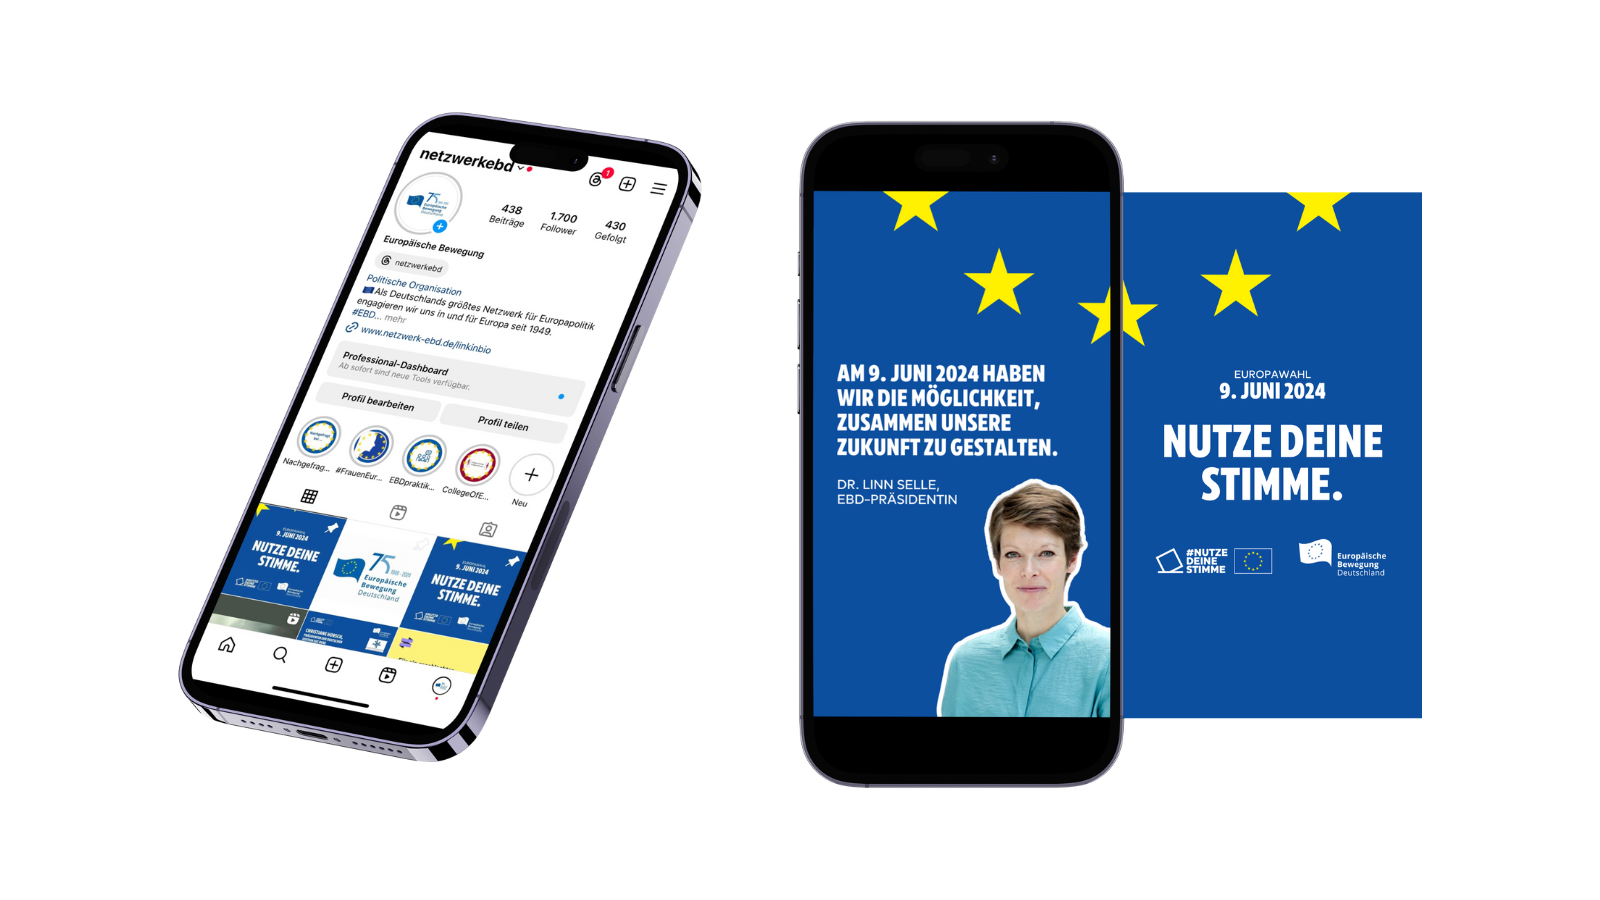 Zwei Smartphones, die das Pofil der EBD in einem Social Media Netzwerk zeigen und dazu aufrufen am 9. Juni 2024 bei der EU-Wahl zu wählen.